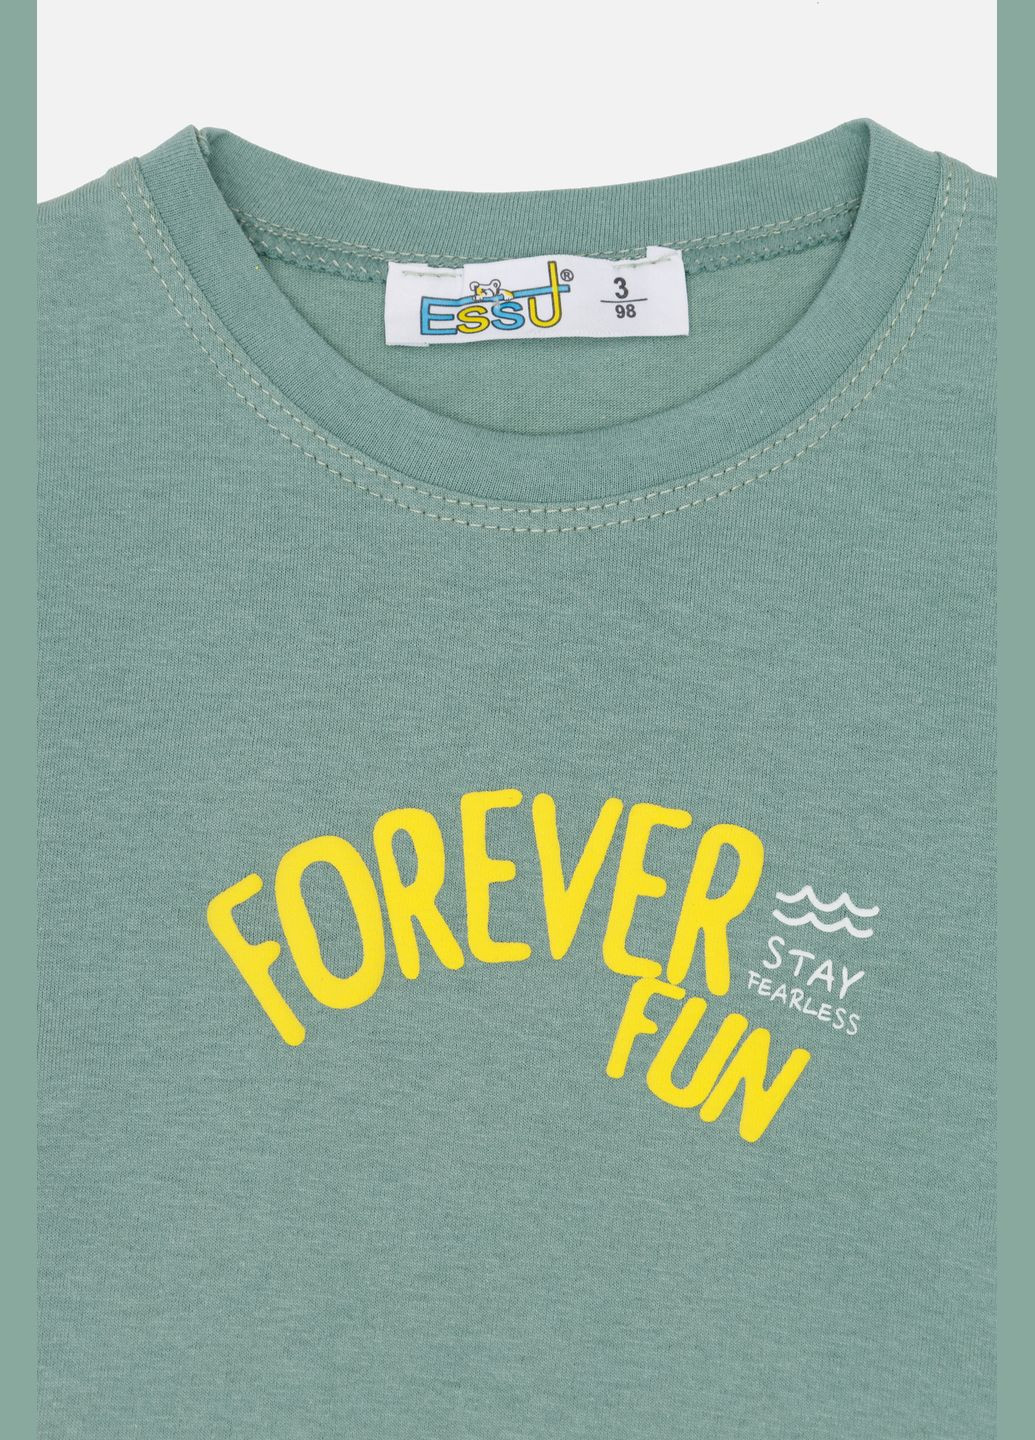 Оливковая летняя футболка с коротким рукавом для мальчика цвет оливковый цб-00243930 Essu